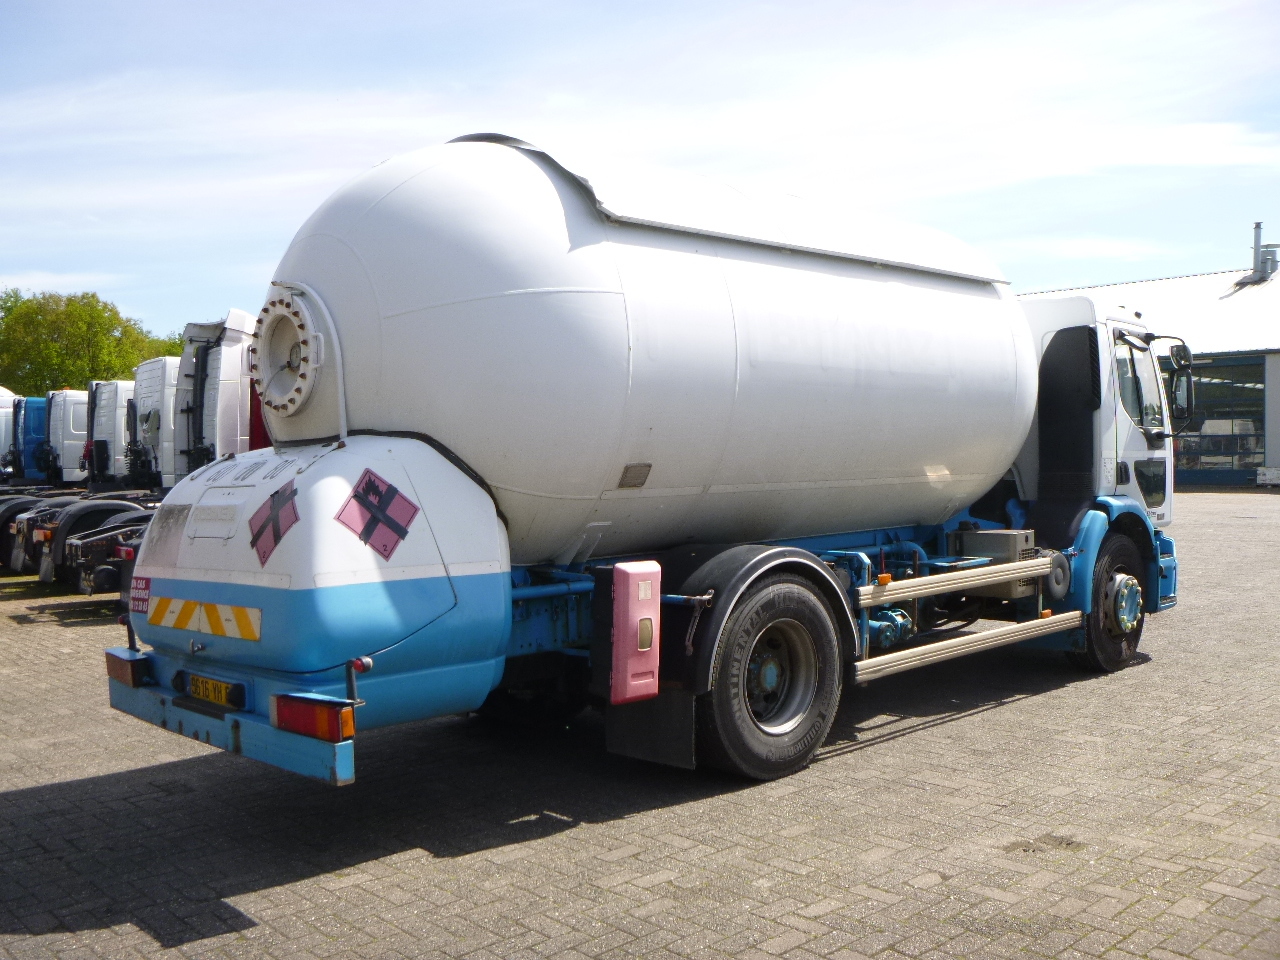 Samochód ciężarowy cysterna dla transportowania LPG Renault Premium 270.19 4x2 gas tank 19.7 m3: zdjęcie 3